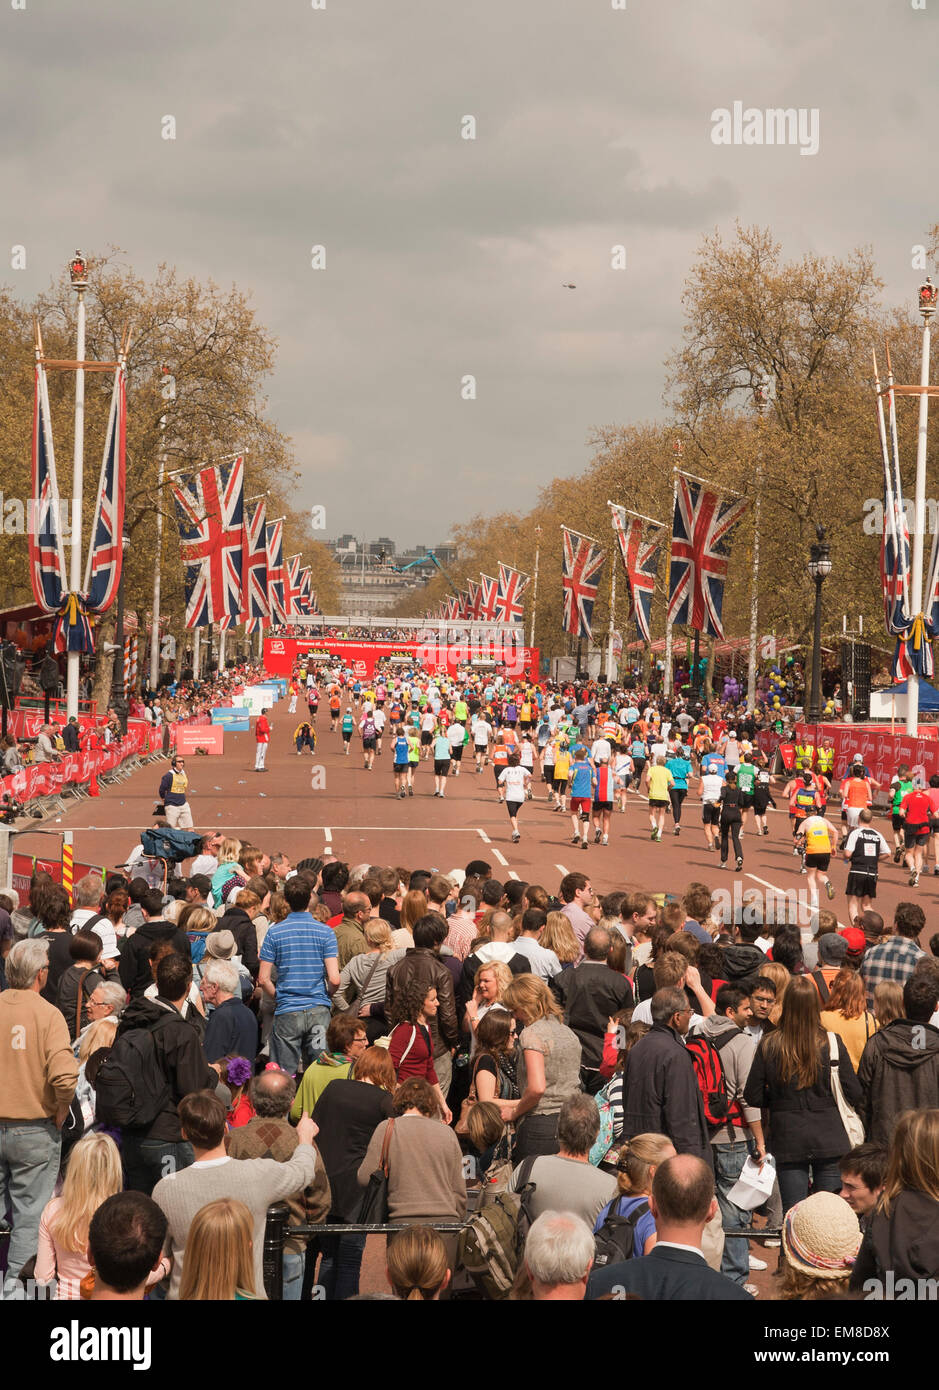 Corredores de maratón acercarse a la línea de meta en forma de jaula, caminar durante el Maratón de Londres. Foto de stock